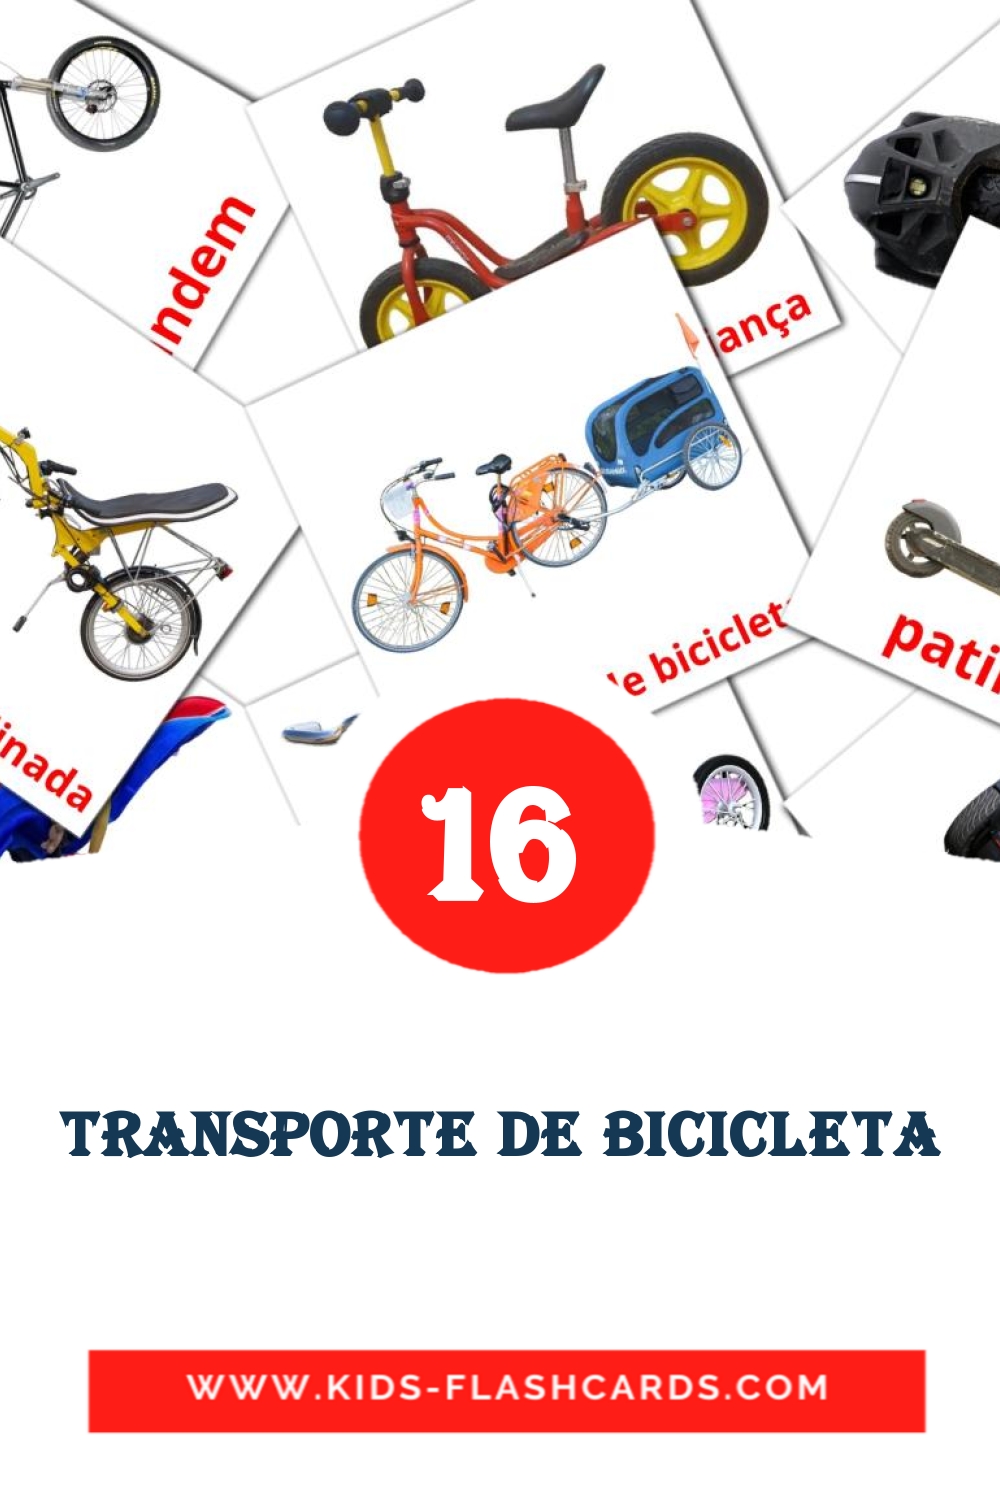 16 carte illustrate di Transporte de Bicicleta per la scuola materna in portoghese